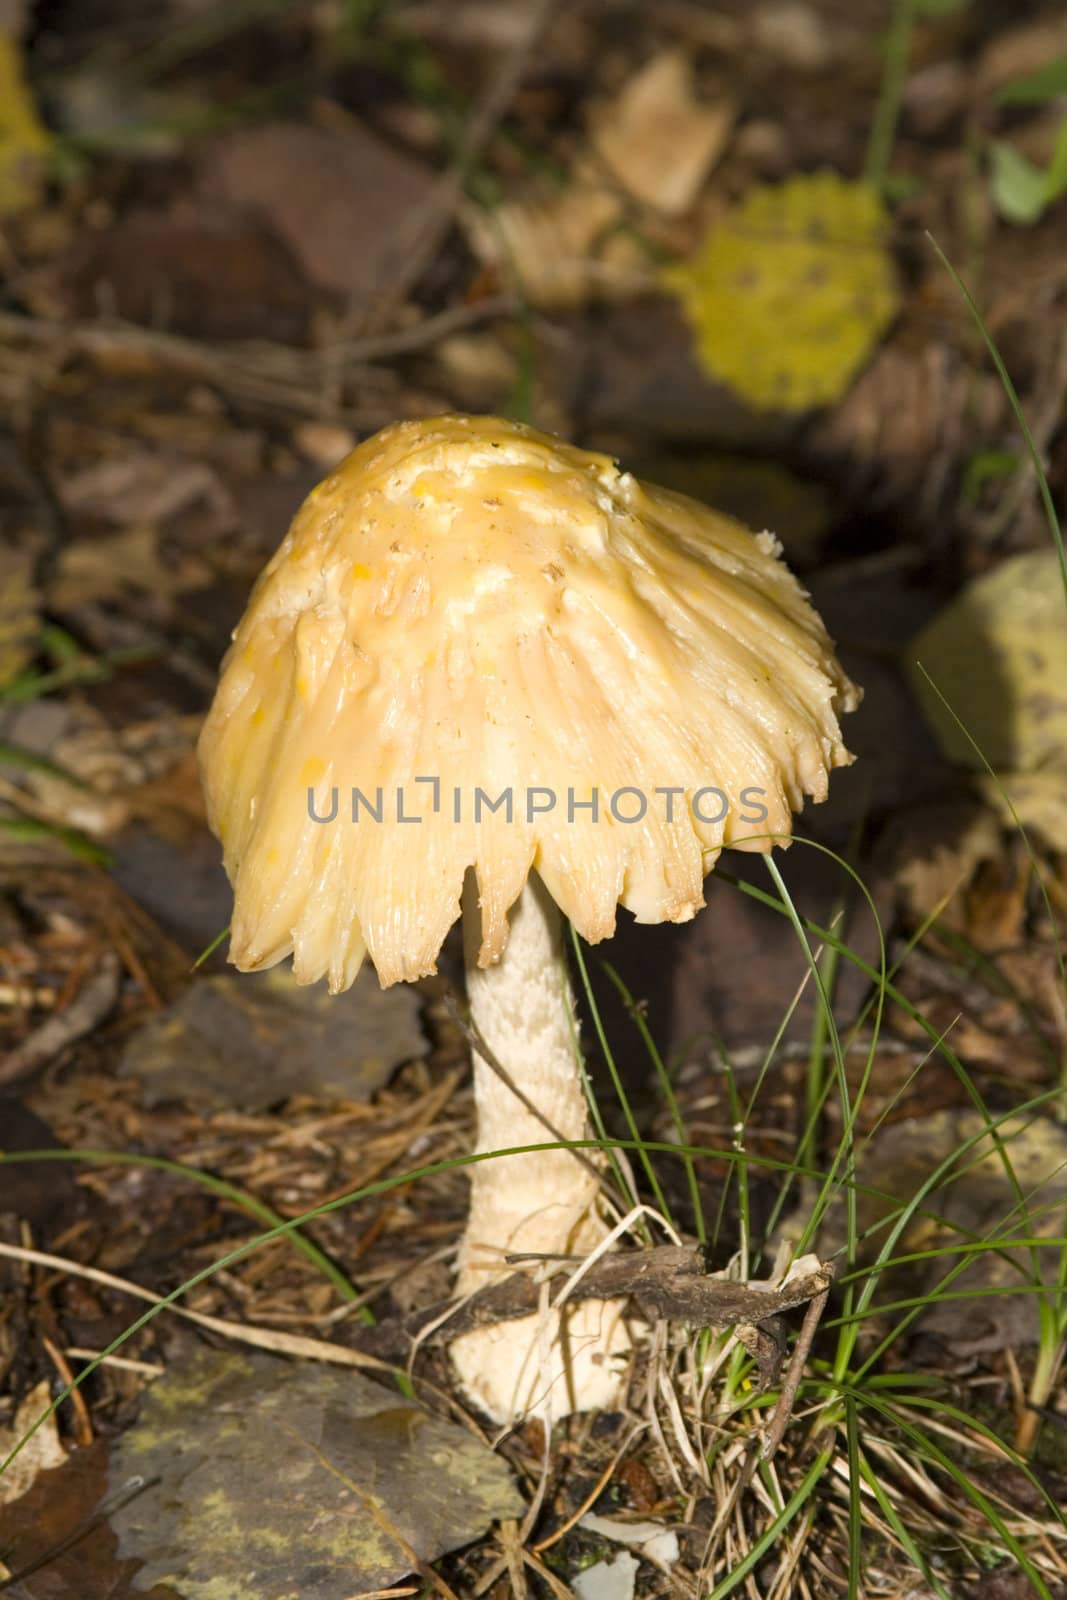 mushrooms by snokid